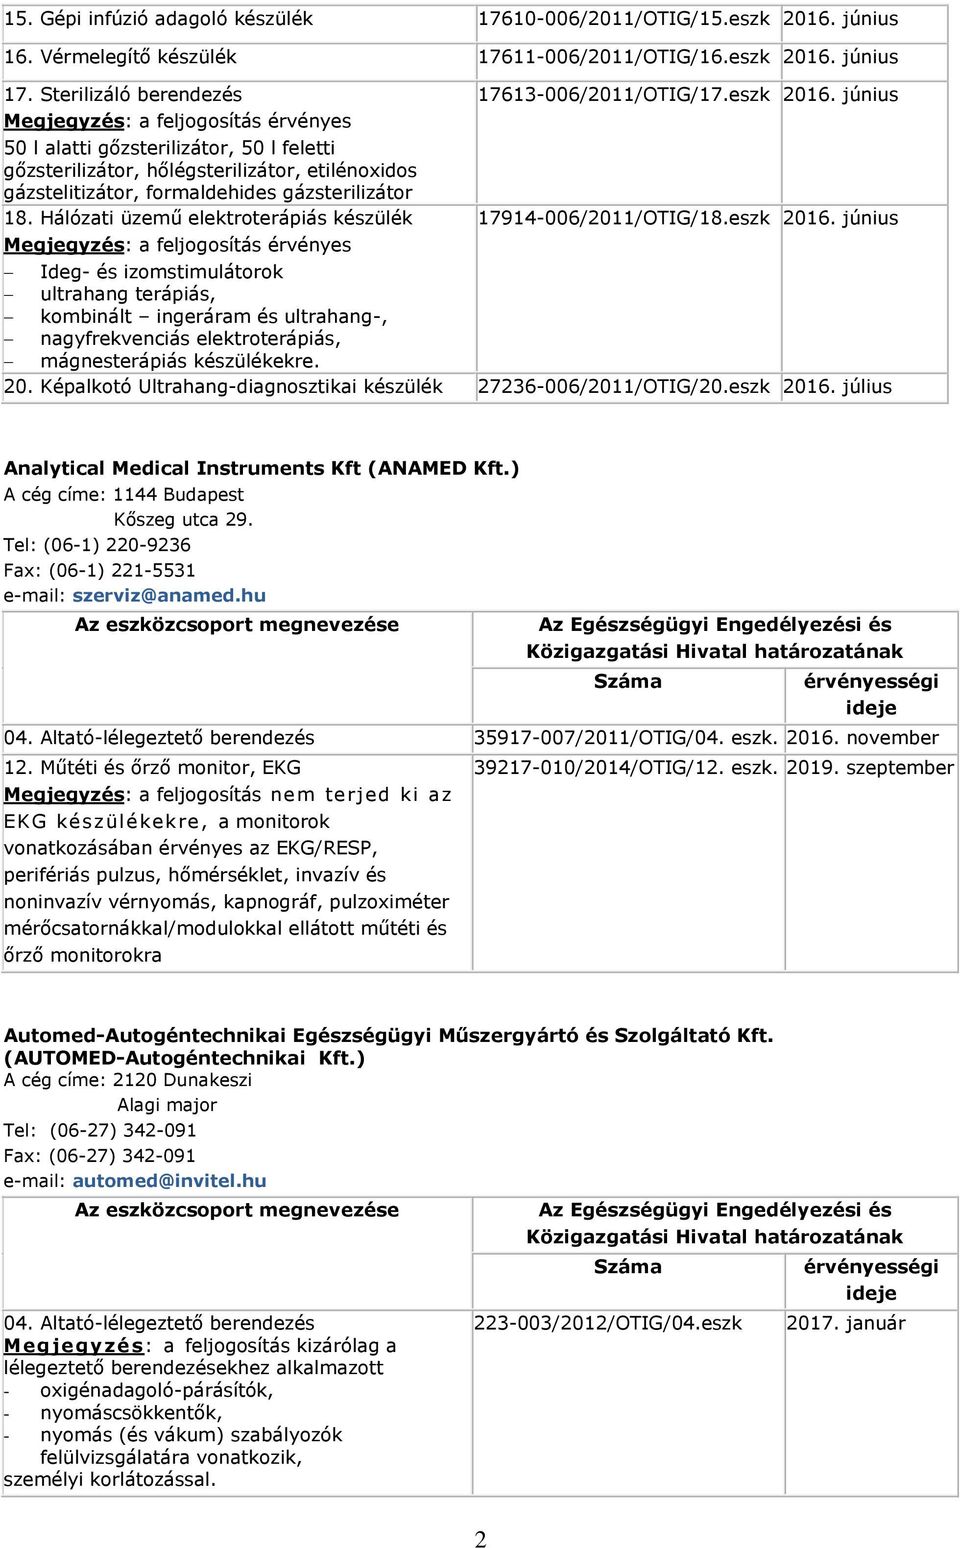 Hálózati üzemű elektroterápiás készülék 17613-006/2011/OTIG/17.eszk 2016.